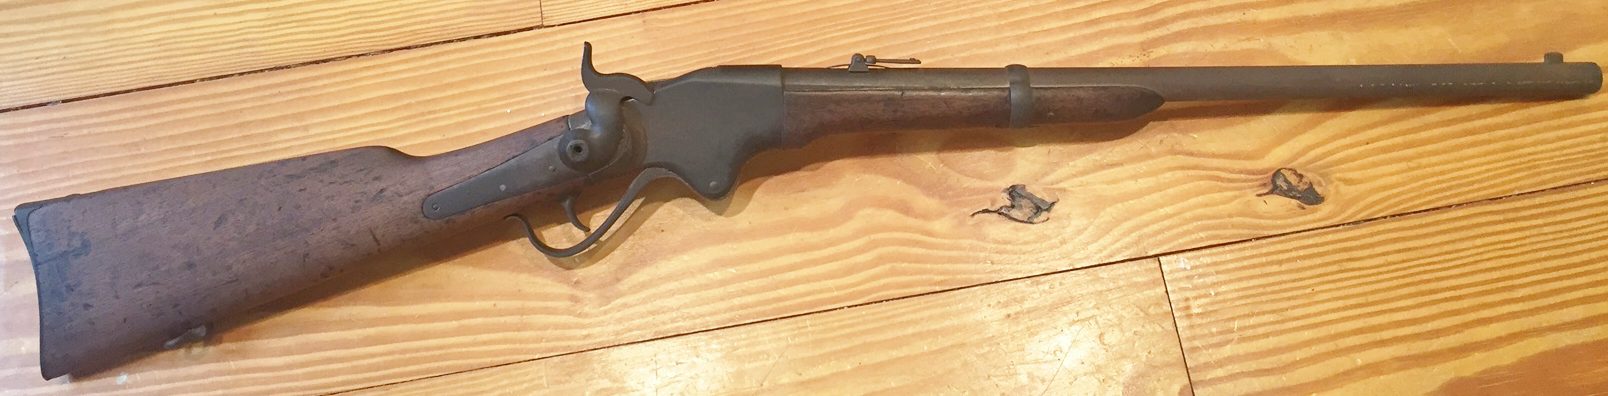 Civil War Spencer Repeating Carbine